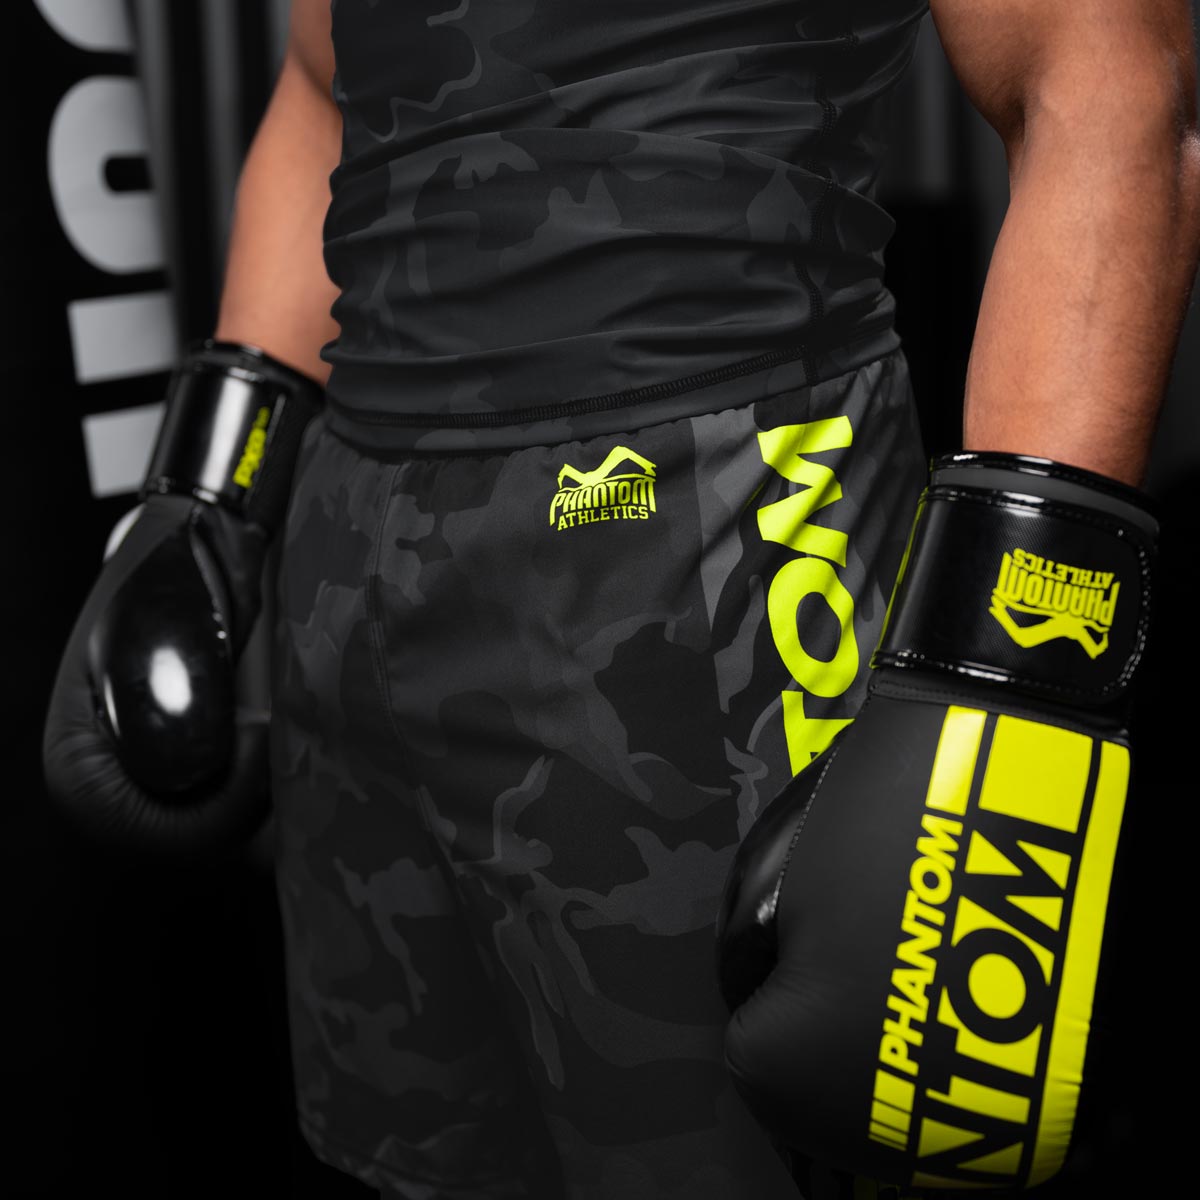 Die Phantom EVO Fightshorts sind die idealen Shorts für deinen Kampfsport. Ganz egal ob MMA, BJJ, Kickboxen oder Muay Thai. Durch das ultraleichte, elastische, reissfeste und schnelltrocknende Material bieten sie die volle Bewegungsfreiheit und maximalen Komfort, so dass du dich ganz auf deinen Fight oder dein Training konzentrieren kannst. Hier in der Farbe Neon Camo. MMA Fighter beim Training.